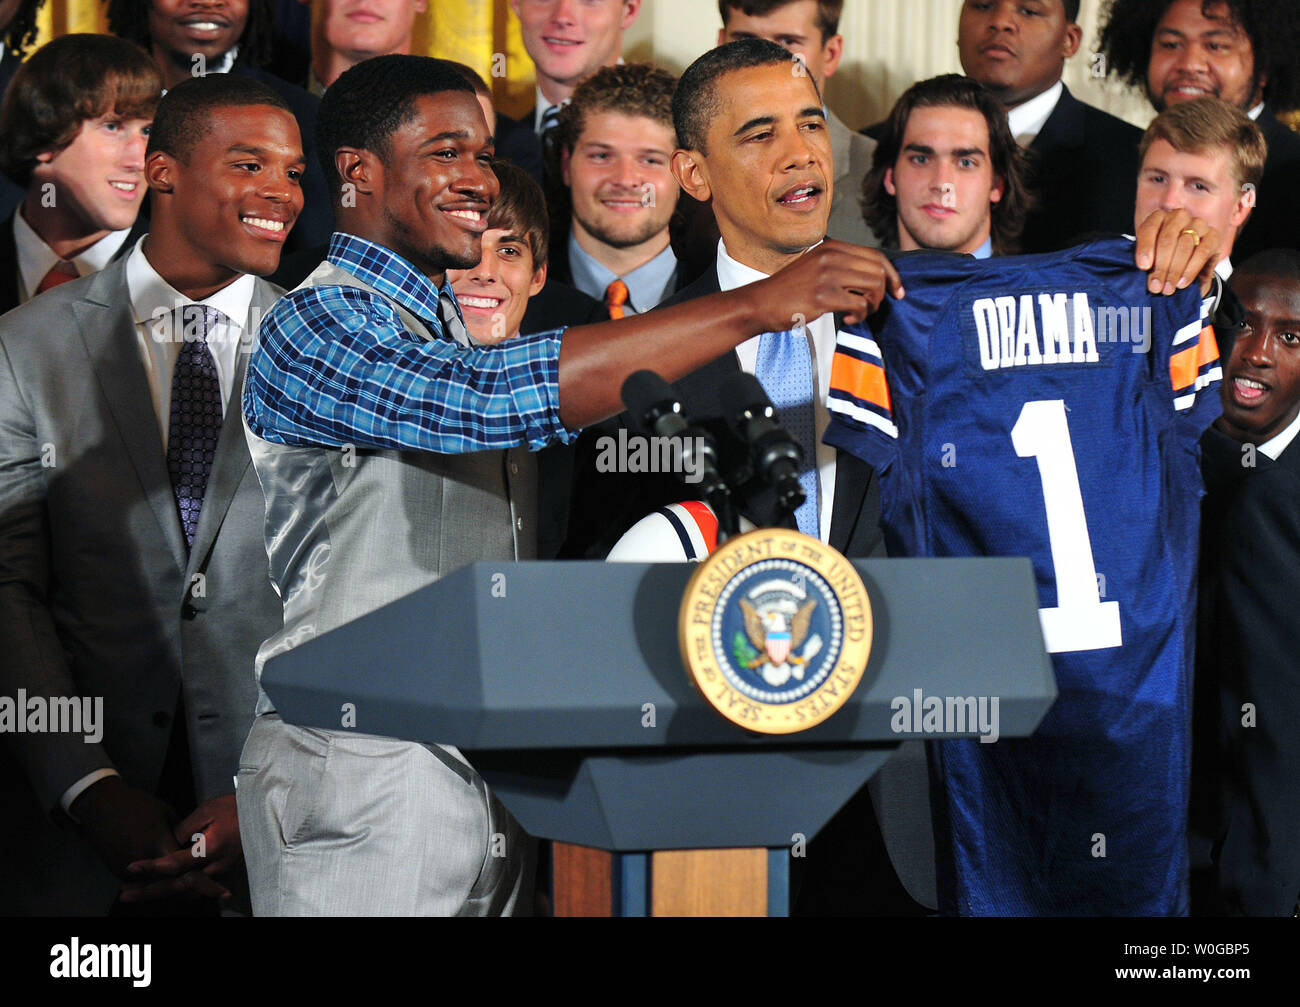 Le président Barack Obama a présenté un maillot de football de l'Université Auburn par Kodi Burns lors d'une cérémonie en l'honneur du Champion NCAA 2010 Auburn Tigers dans l'Est à la Maison Blanche à Washington le 8 juin 2011. UPI/Kevin Dietsch Banque D'Images